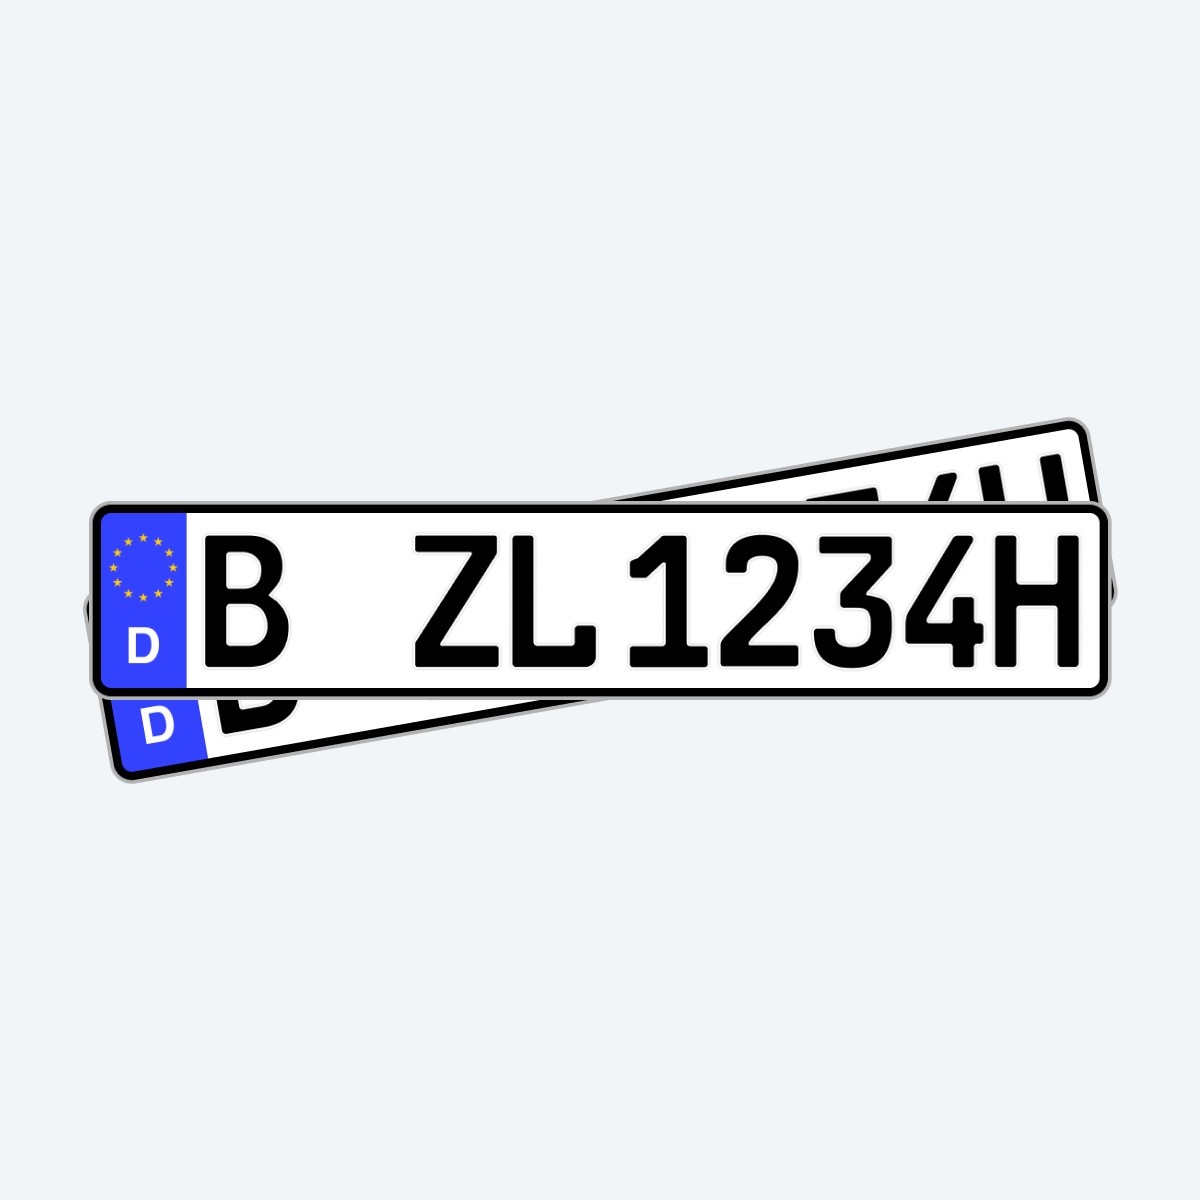 KFZ-Kennzeichen Elektro Auto Nummernschild inkl. rahmenlose  Kennzeichenhalter transparent DIN Autokennzeichen 520mm x 110mm  Fahrradträger Anhänger LKW Autoschild (03 Elektro E-Kennzeichen) :  : Auto & Motorrad